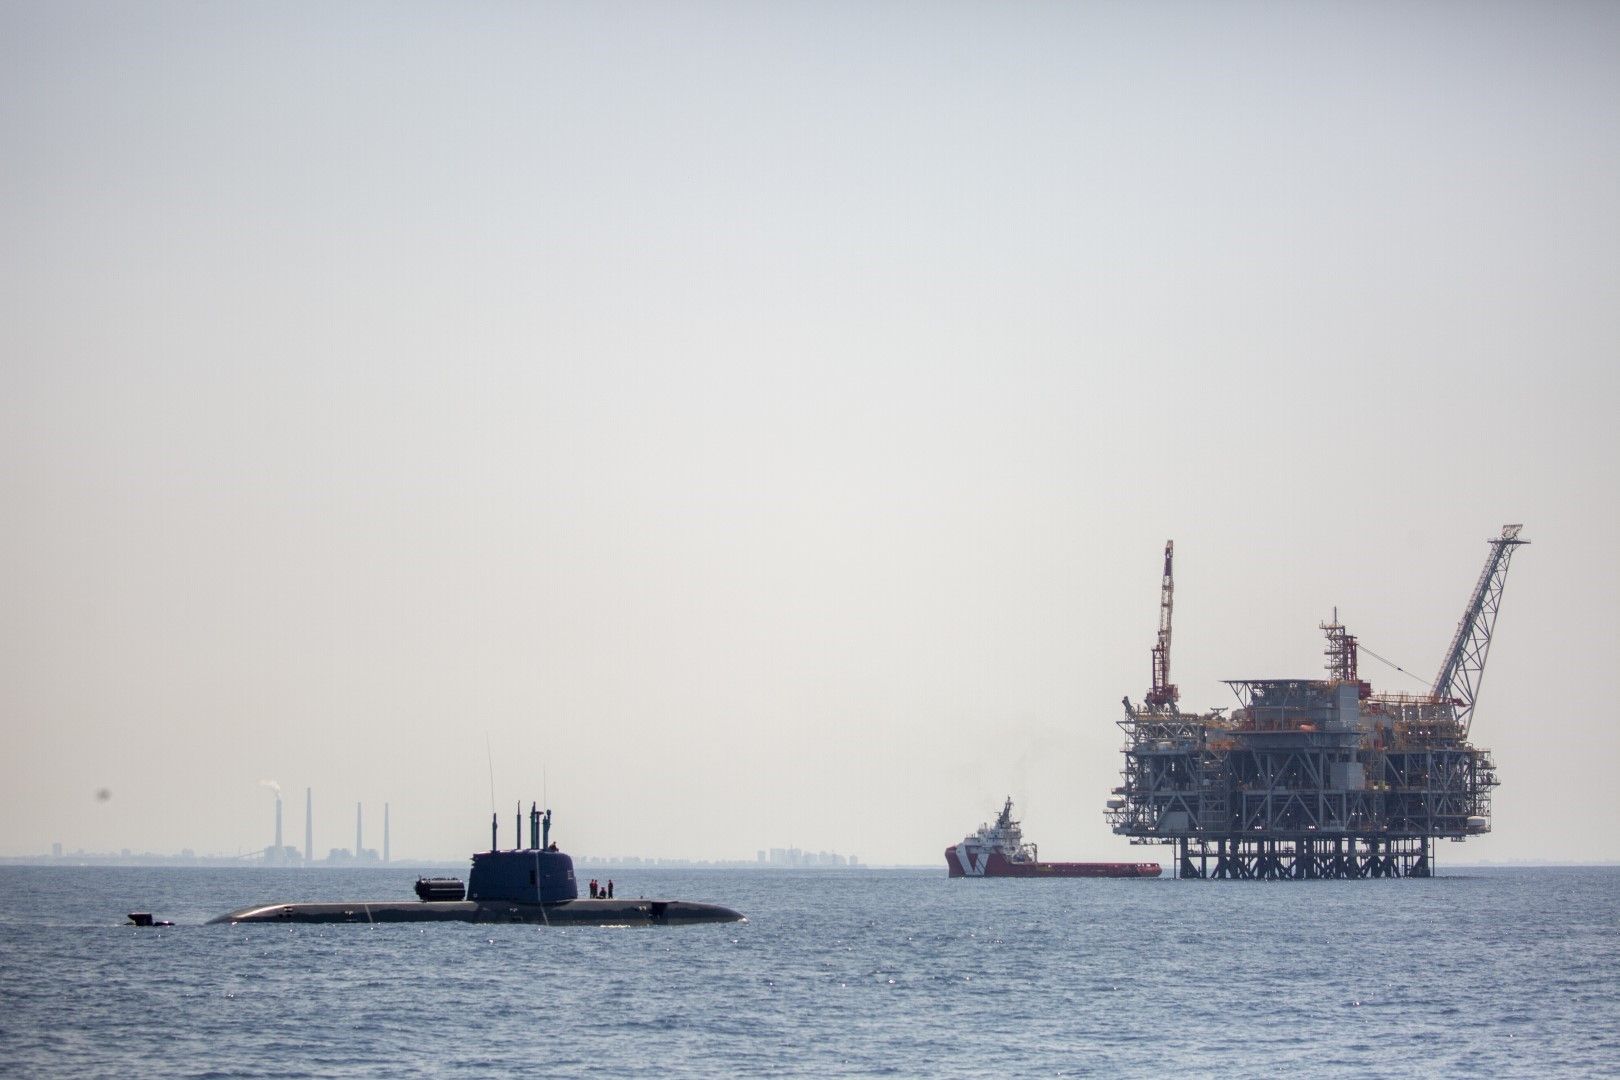 Нефтена платформа в израелското офшорно газово находище Левиатан се вижда от борда на израелската подводница Atzmaut, която патрулира в Средиземно море, 1 септември 2021 г.